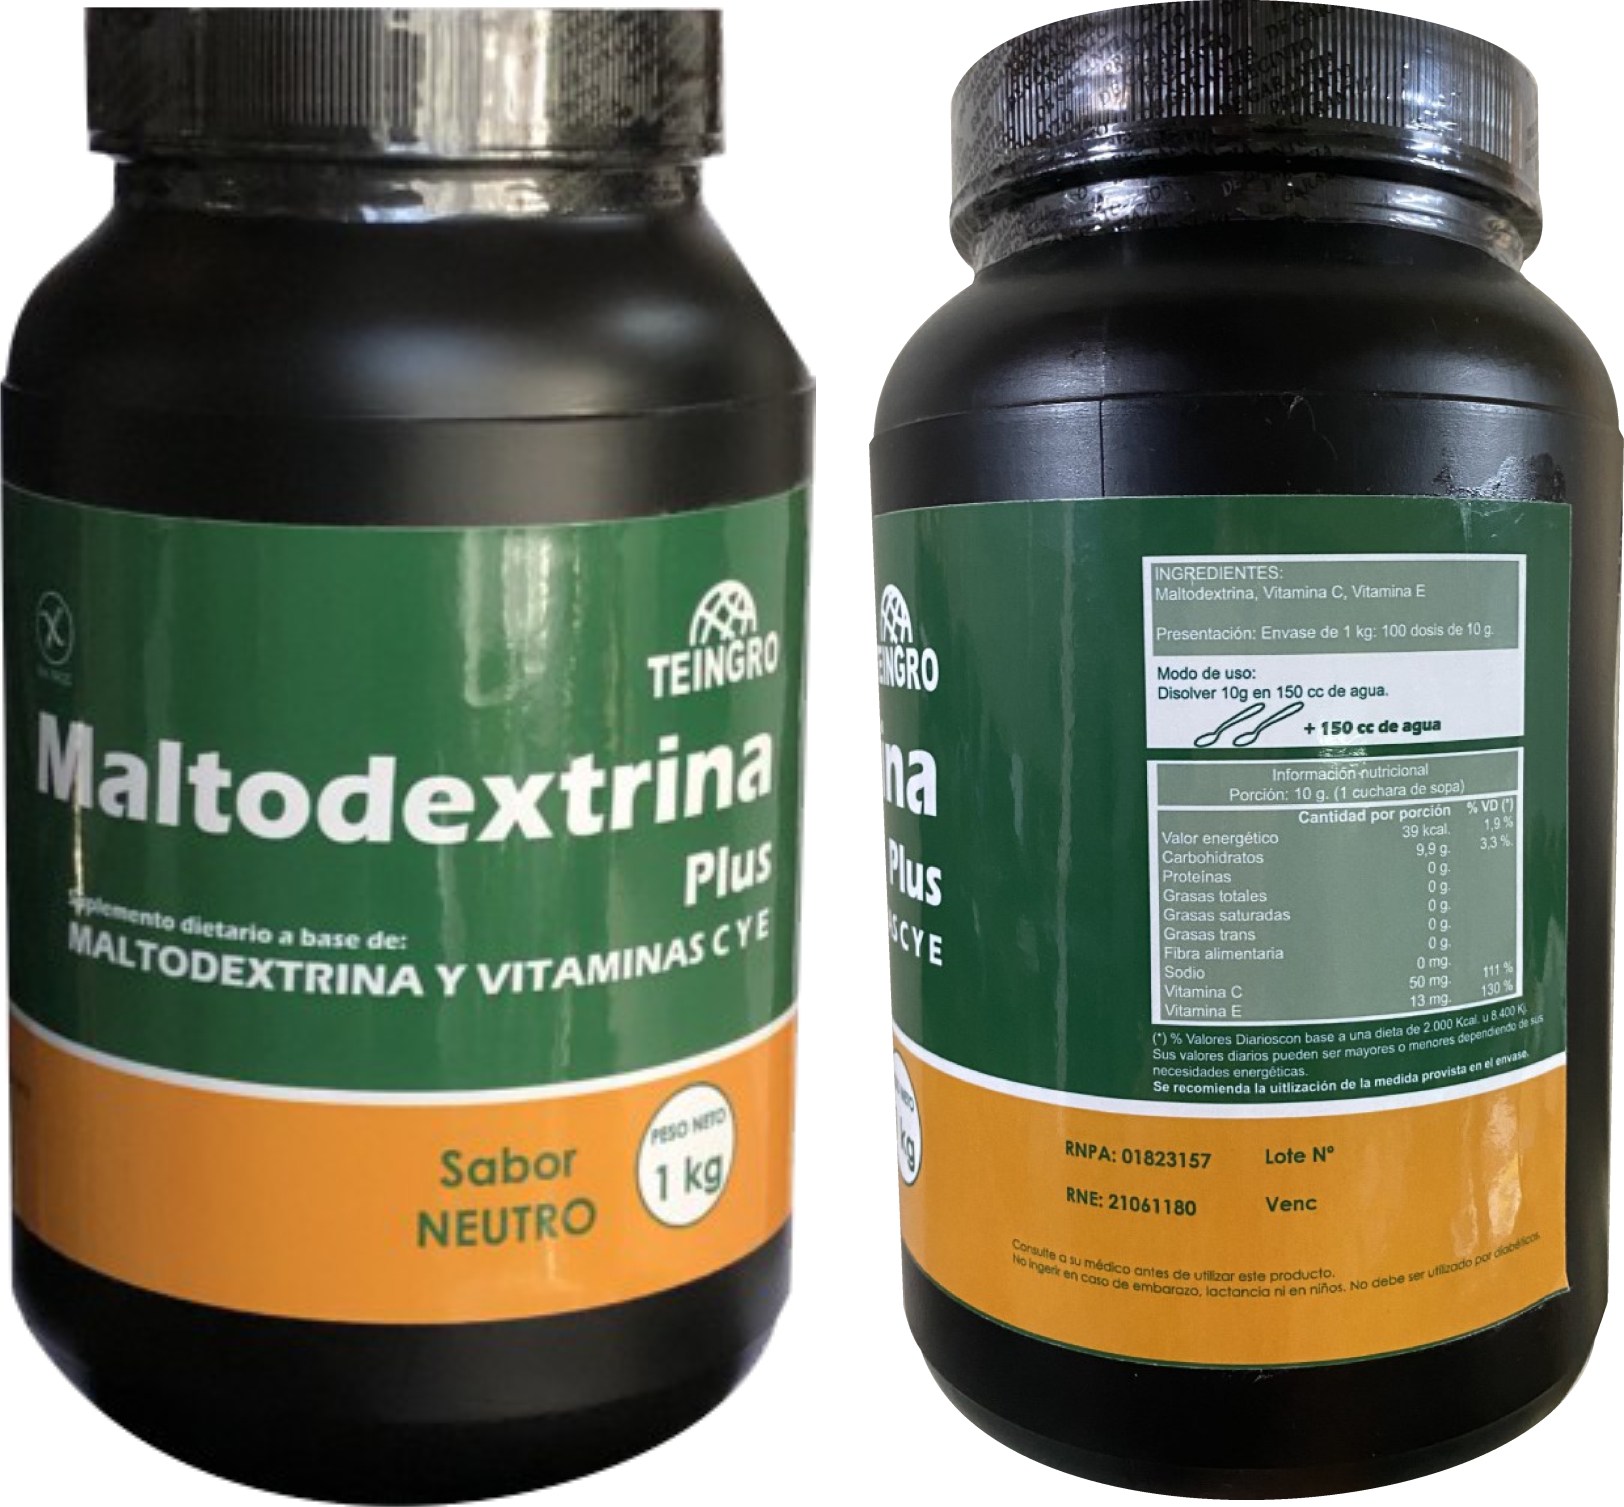 maltodextrina image